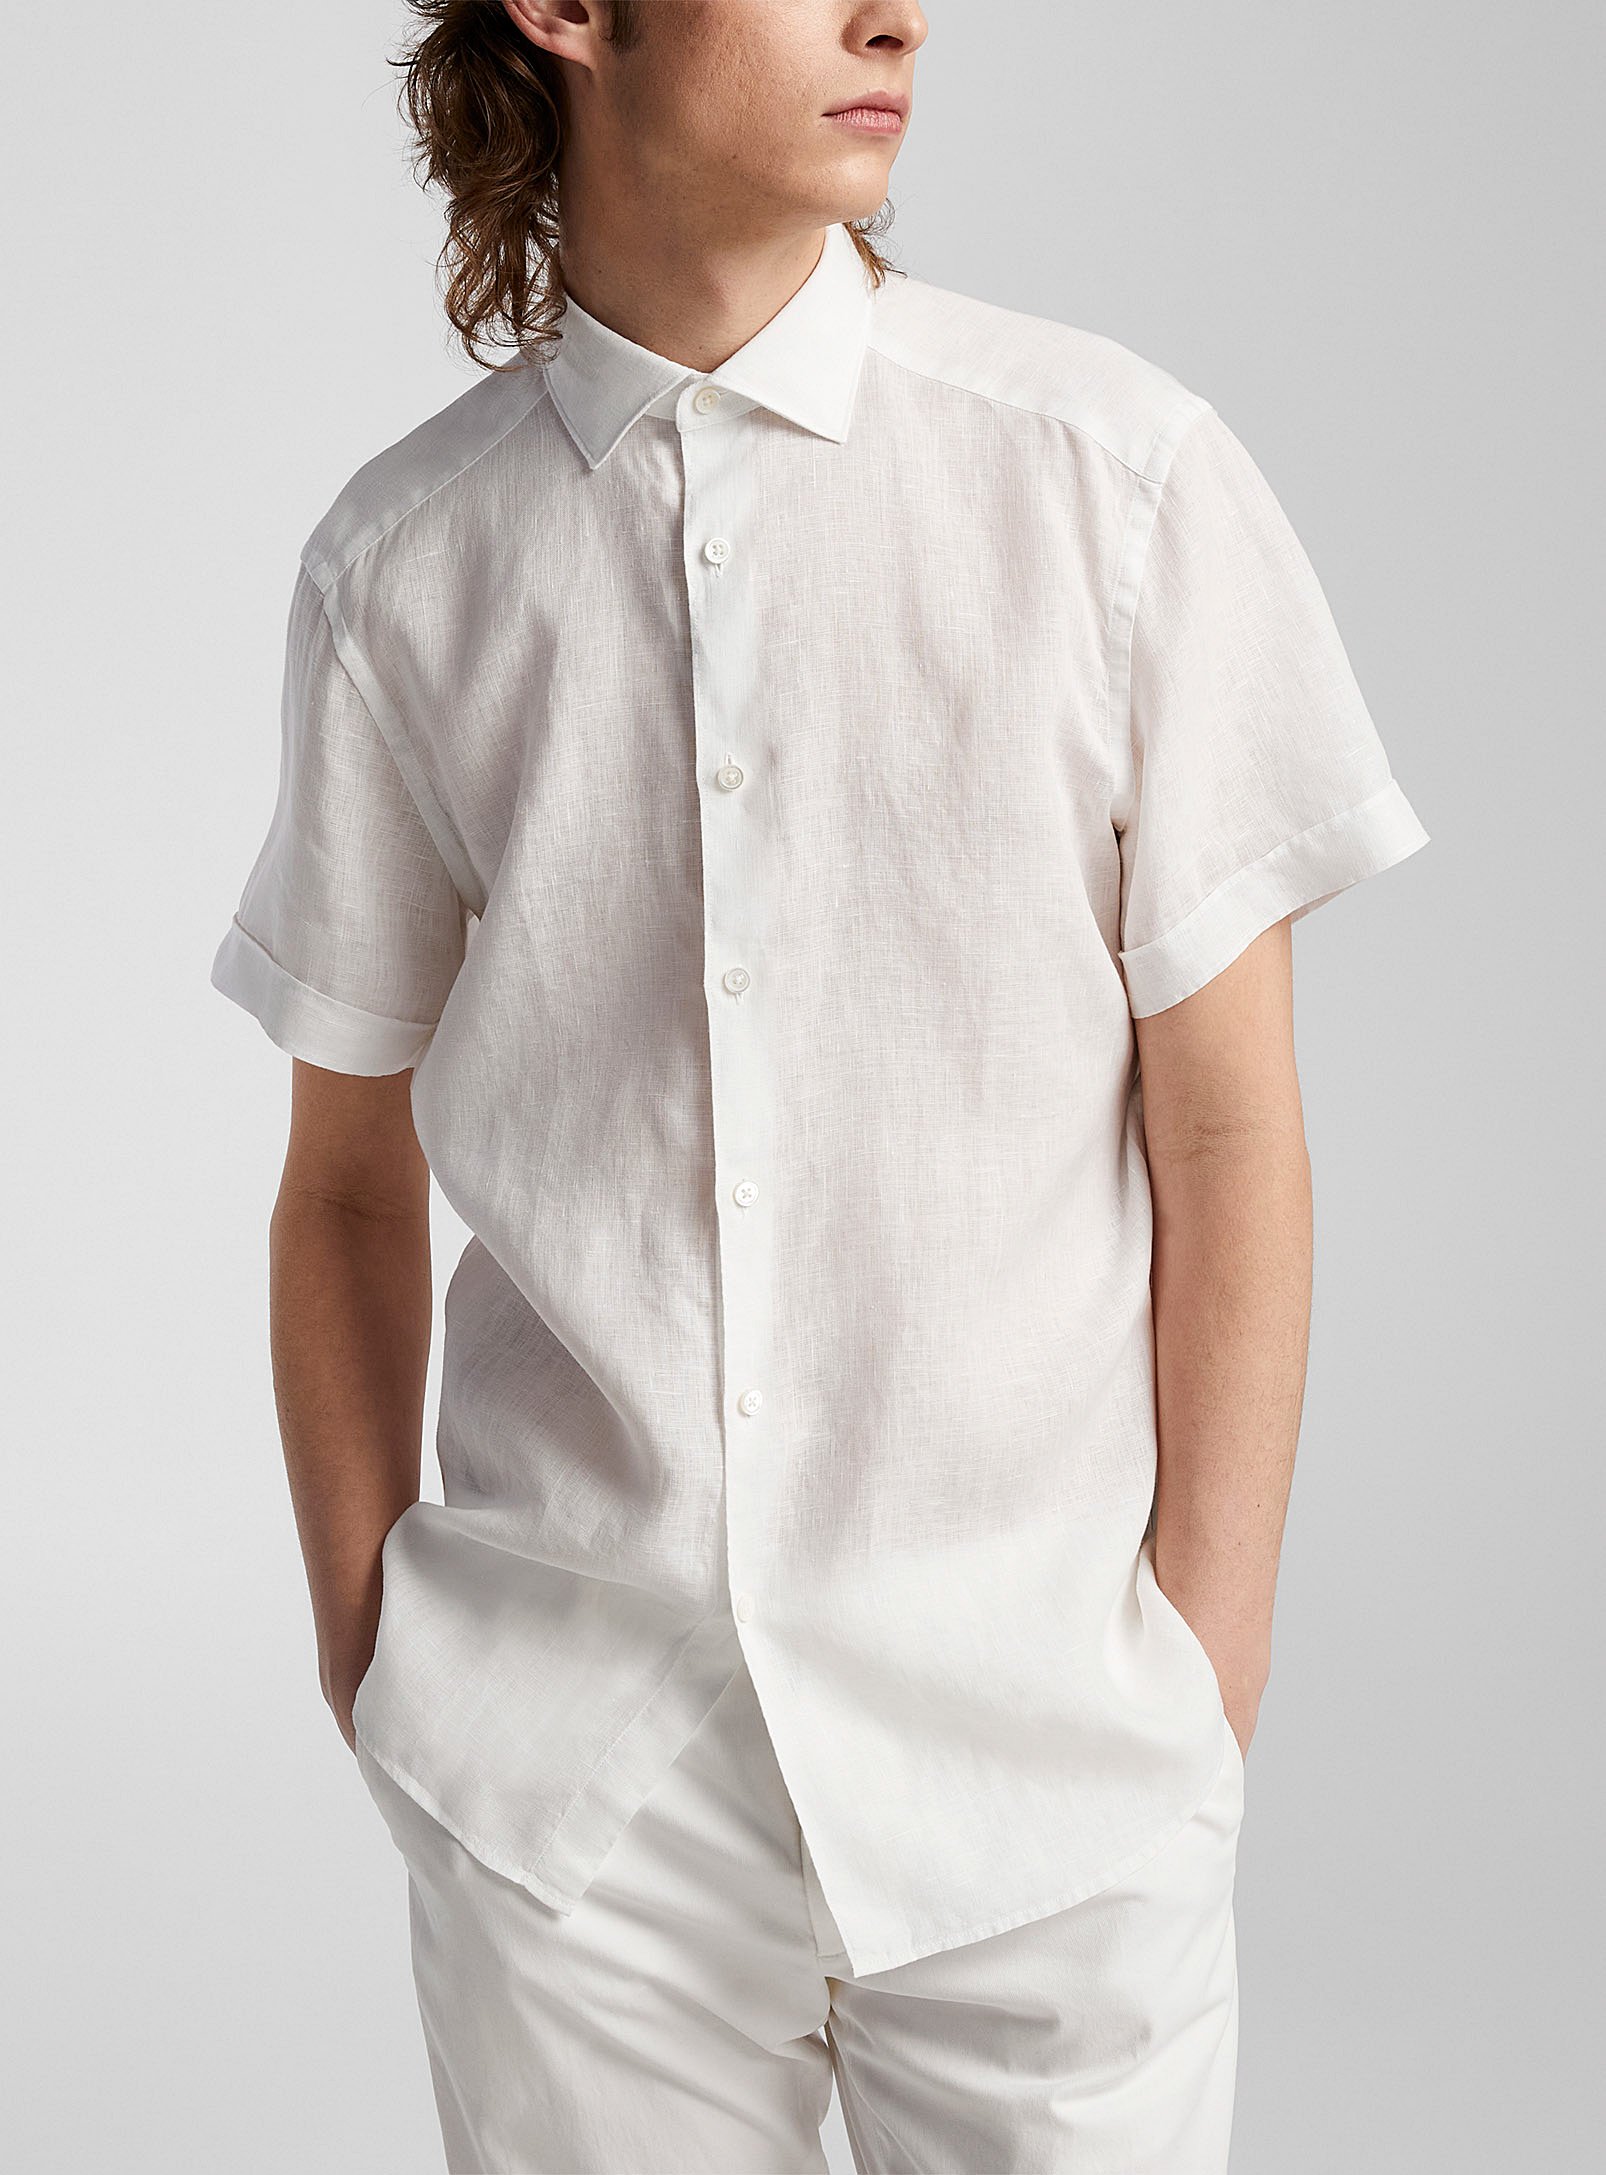 Zegna - Men's Short-sleeve pure linen shirt